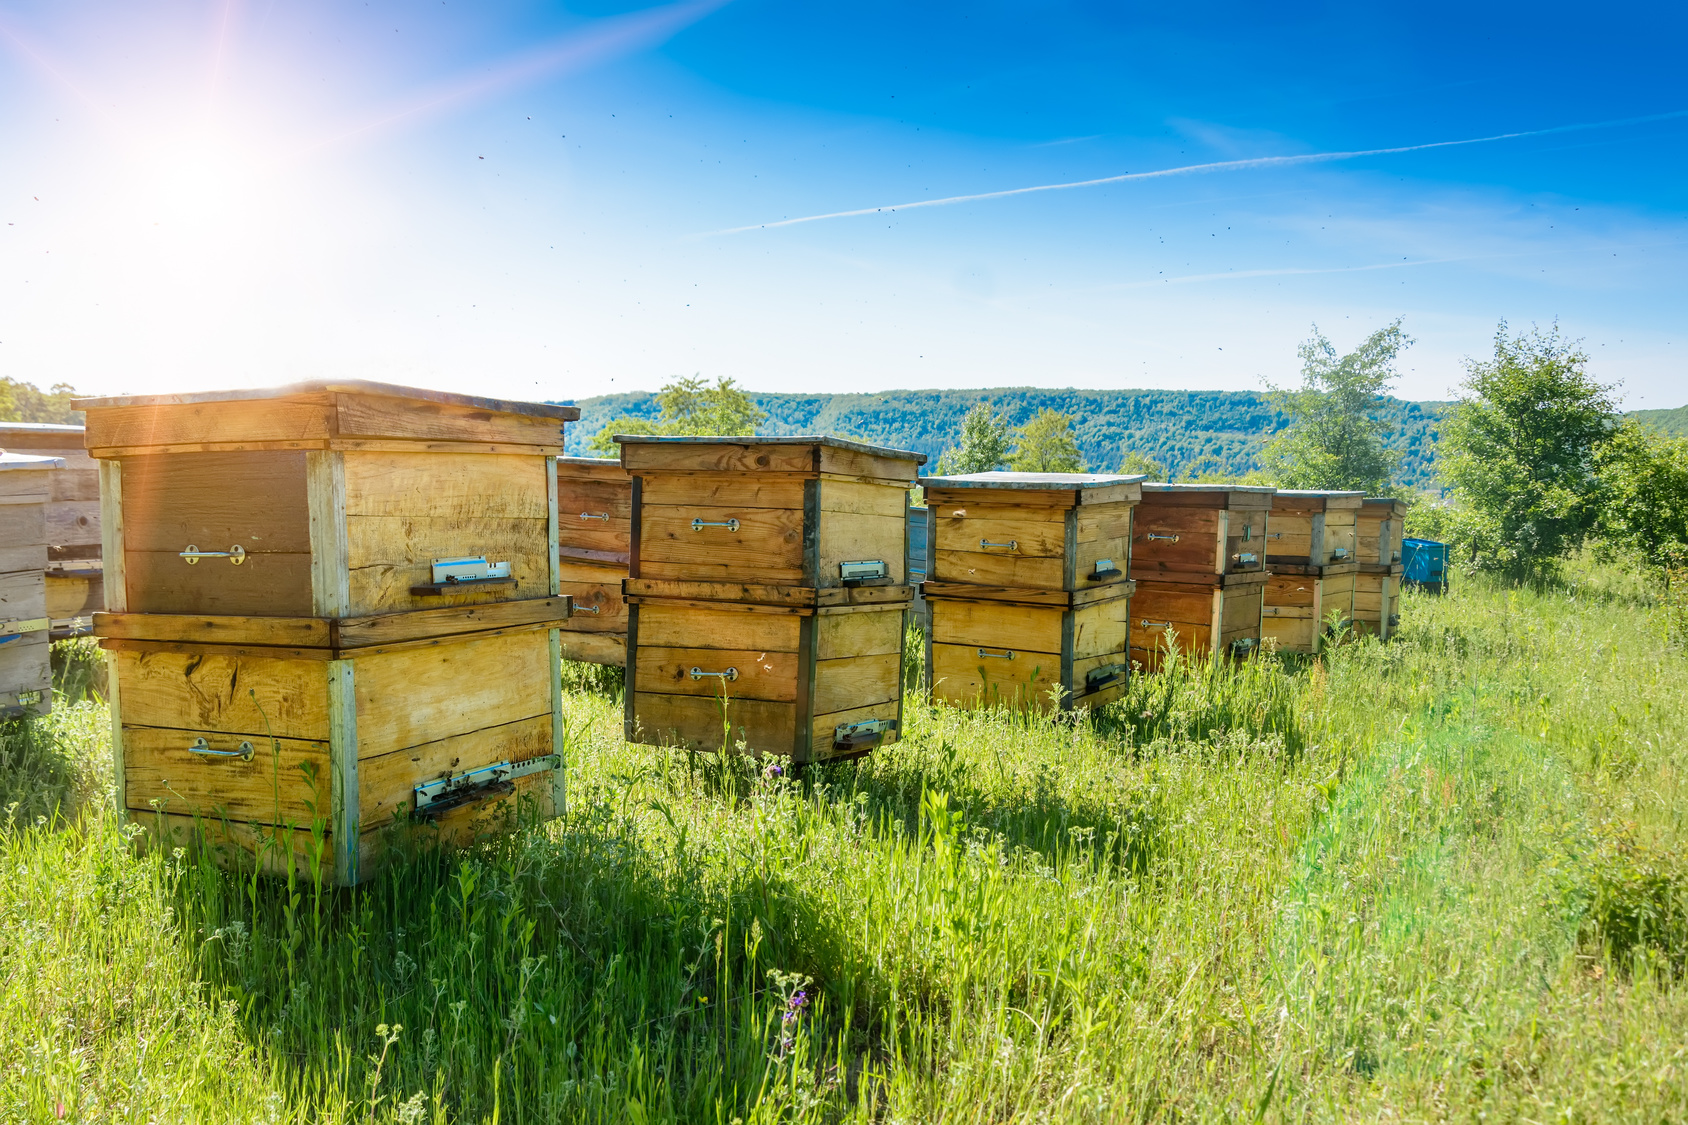 Les abeilles sont les plus connues des animaux pollinisateurs. Leur rôle pour l’agriculture est crucial. © kosolovskyy, Fotolia